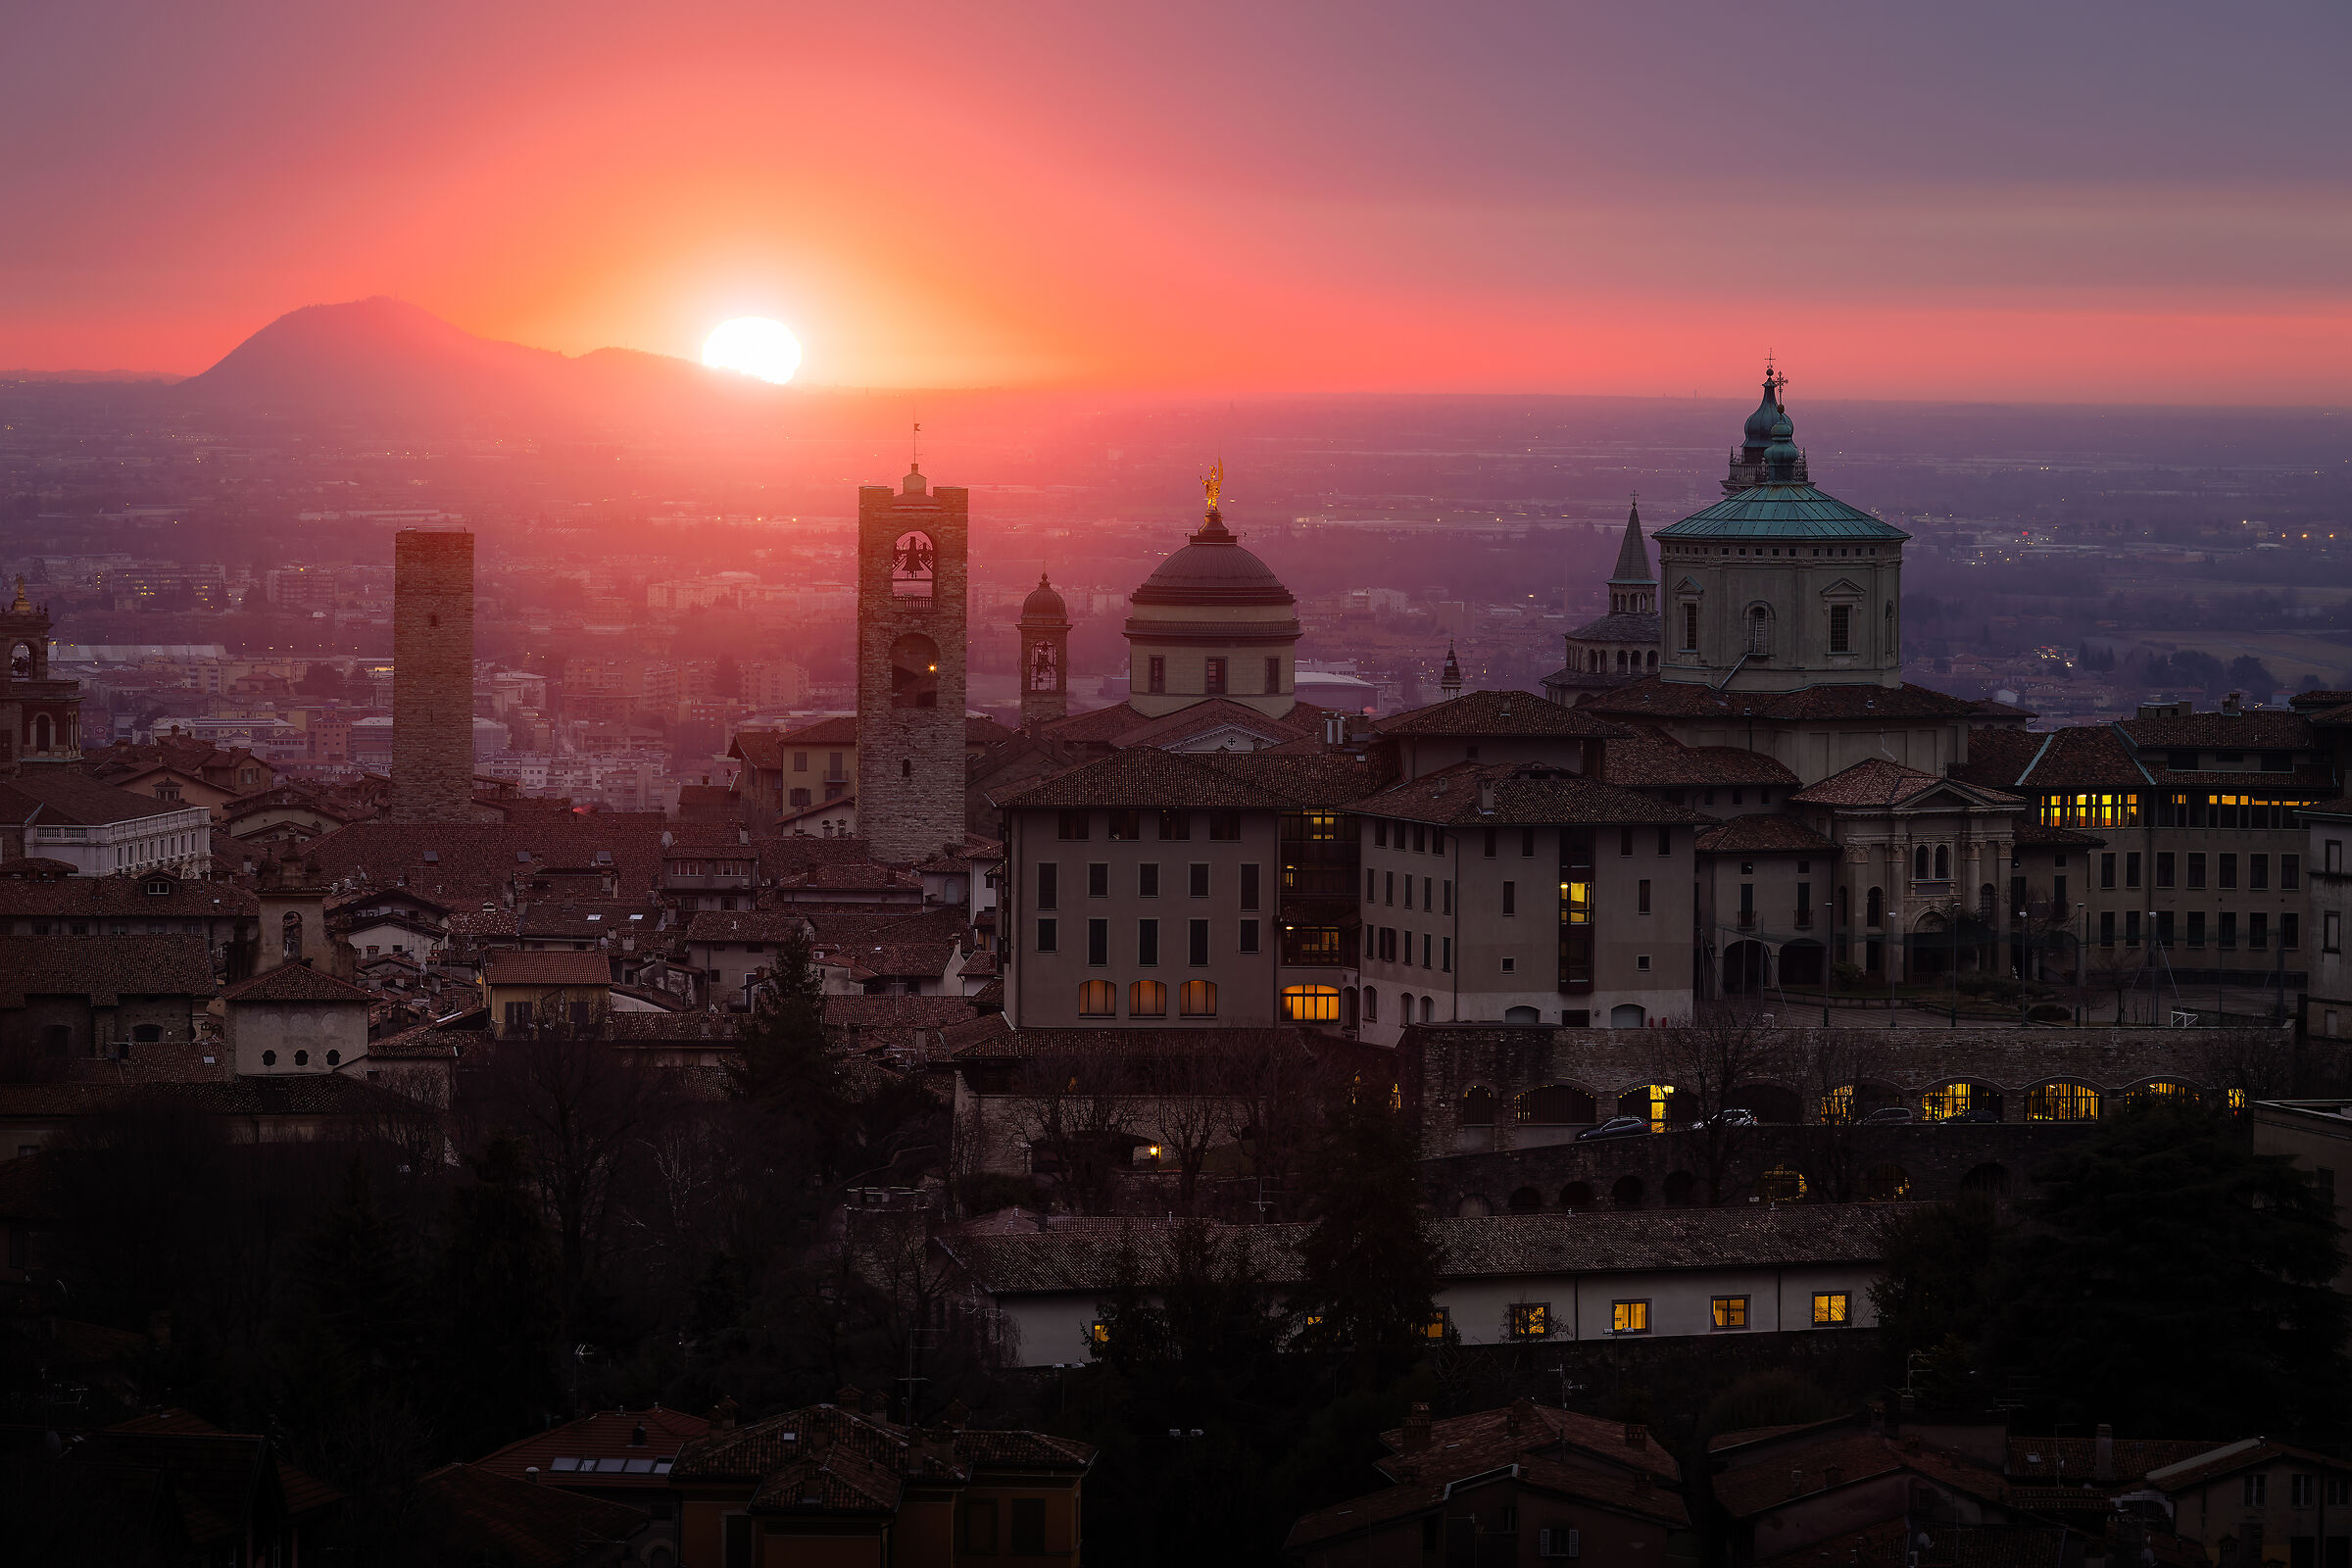 The dawn of upper Bergamo...